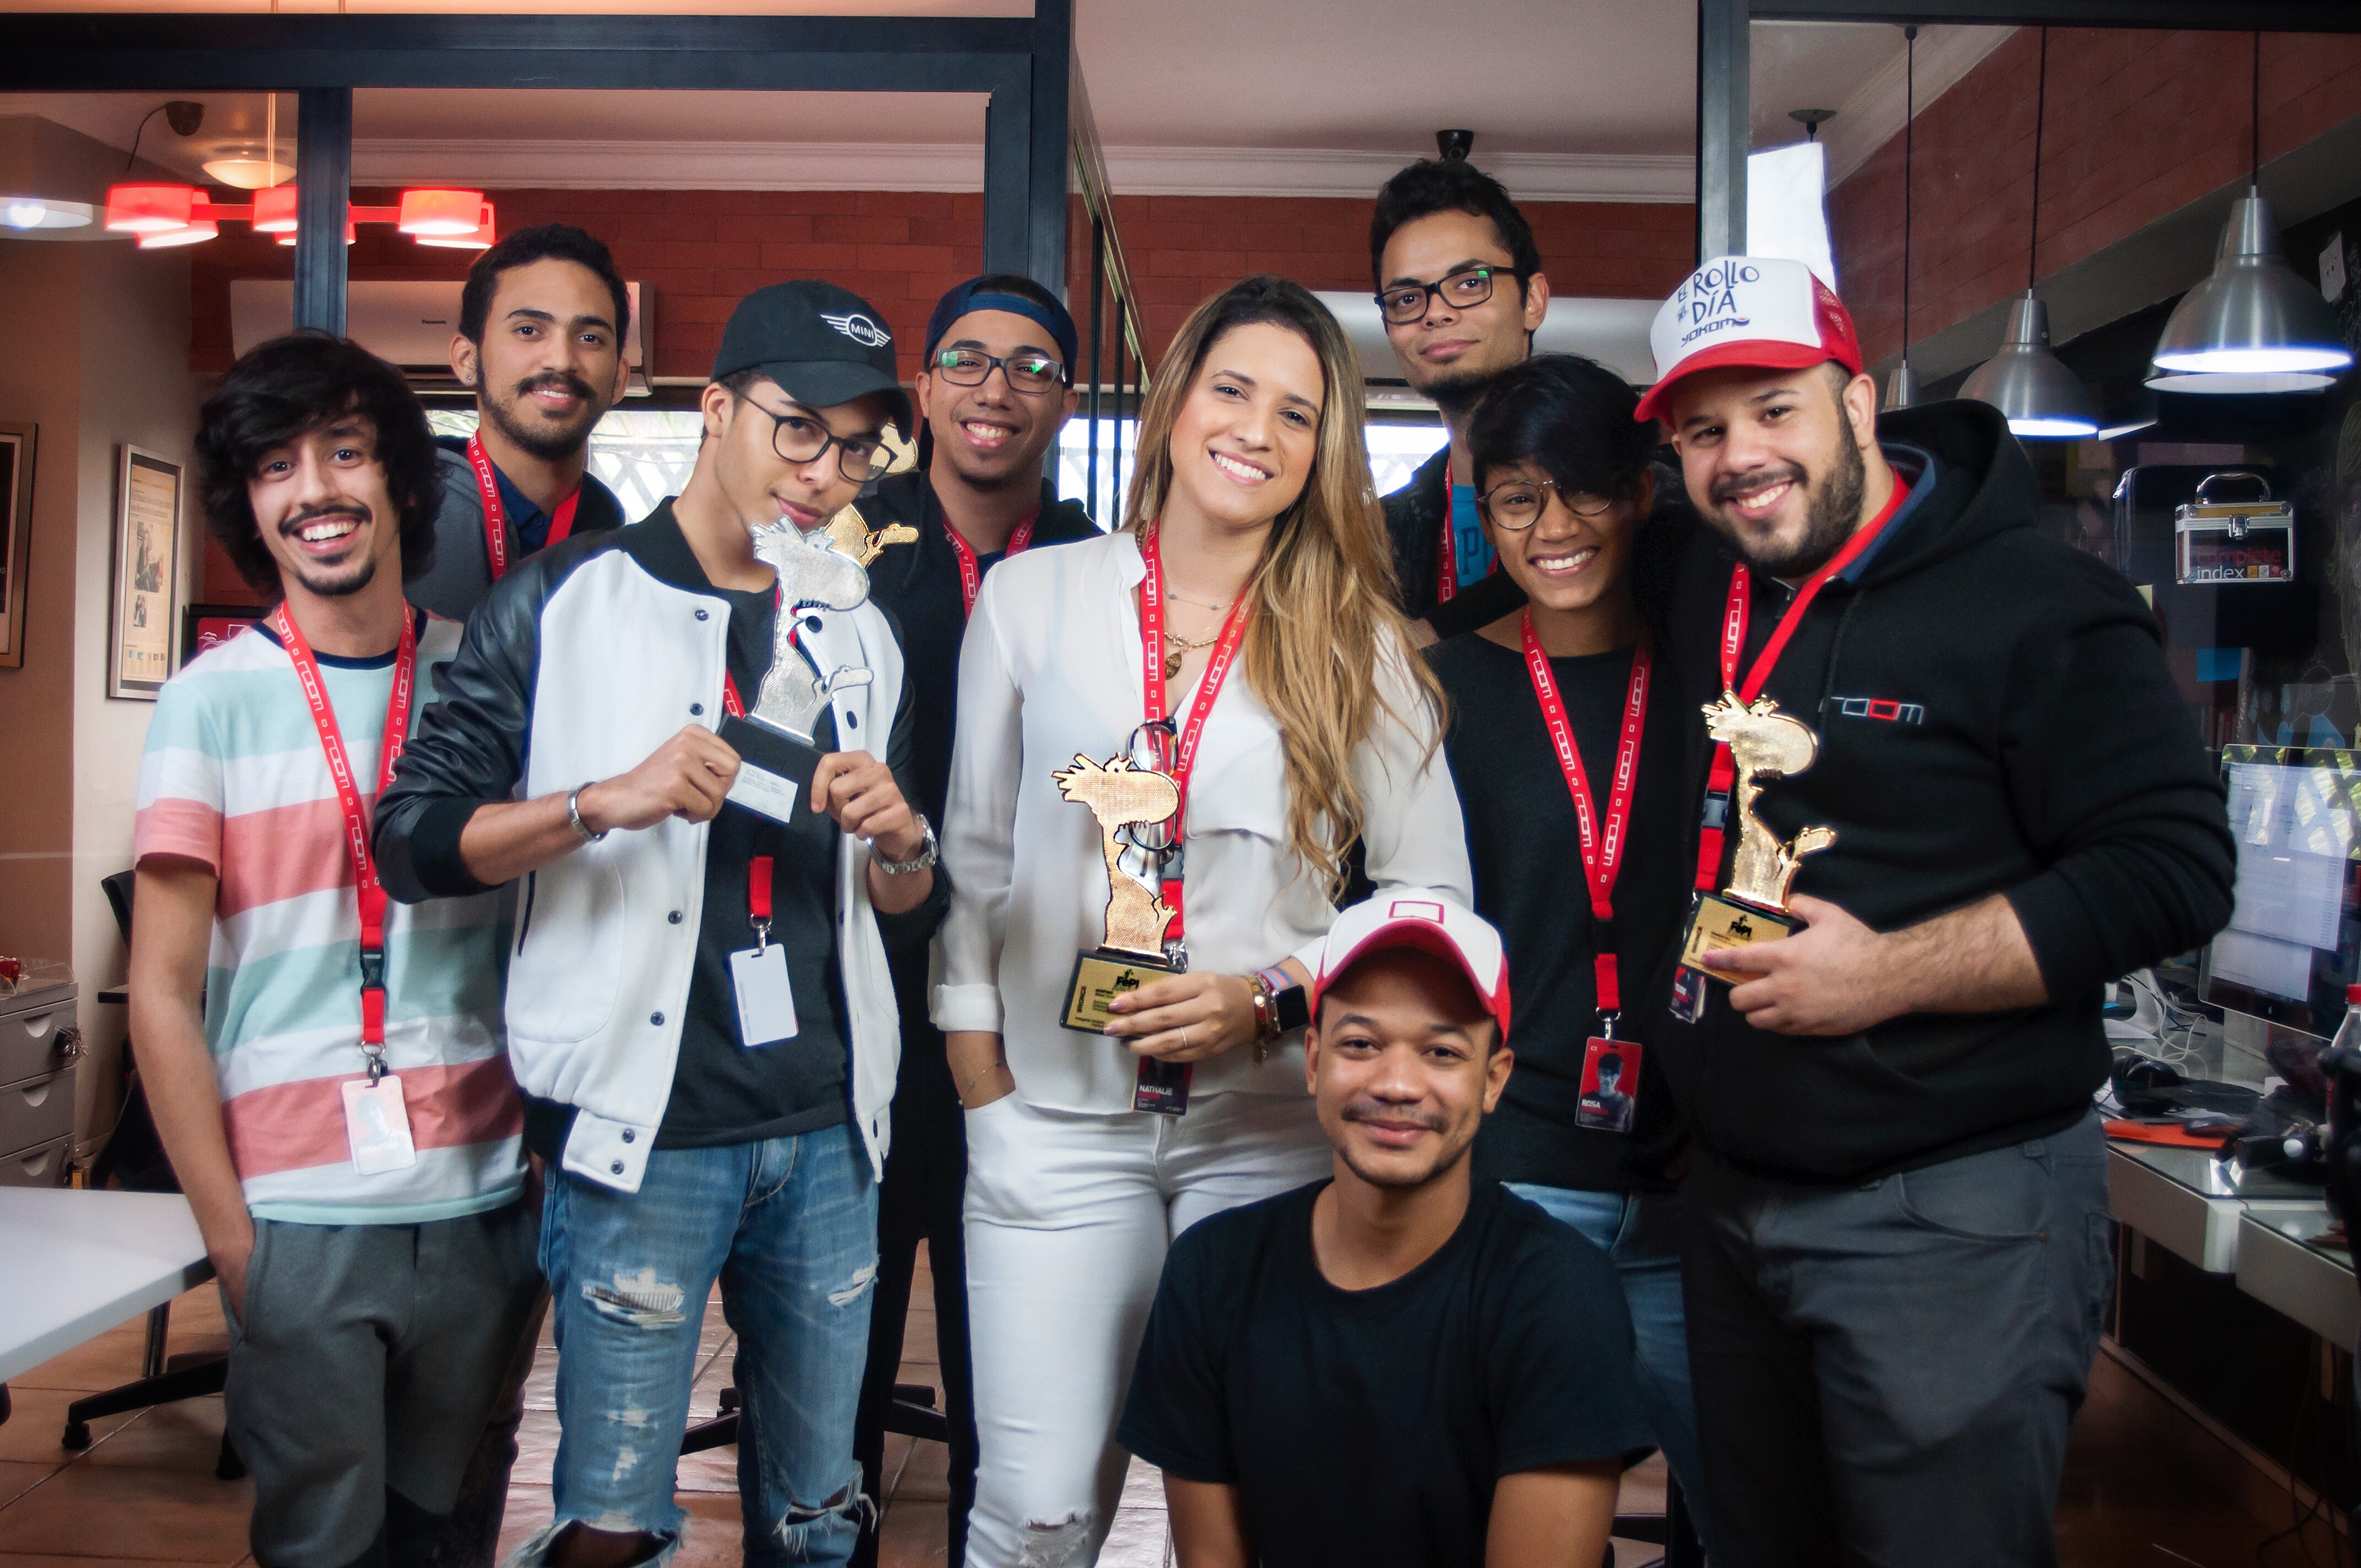  Room Grupo Creativo gana por tercer año consecutivo el Festival Internacional de la Publicidad Independiente (FePI) de Argentina